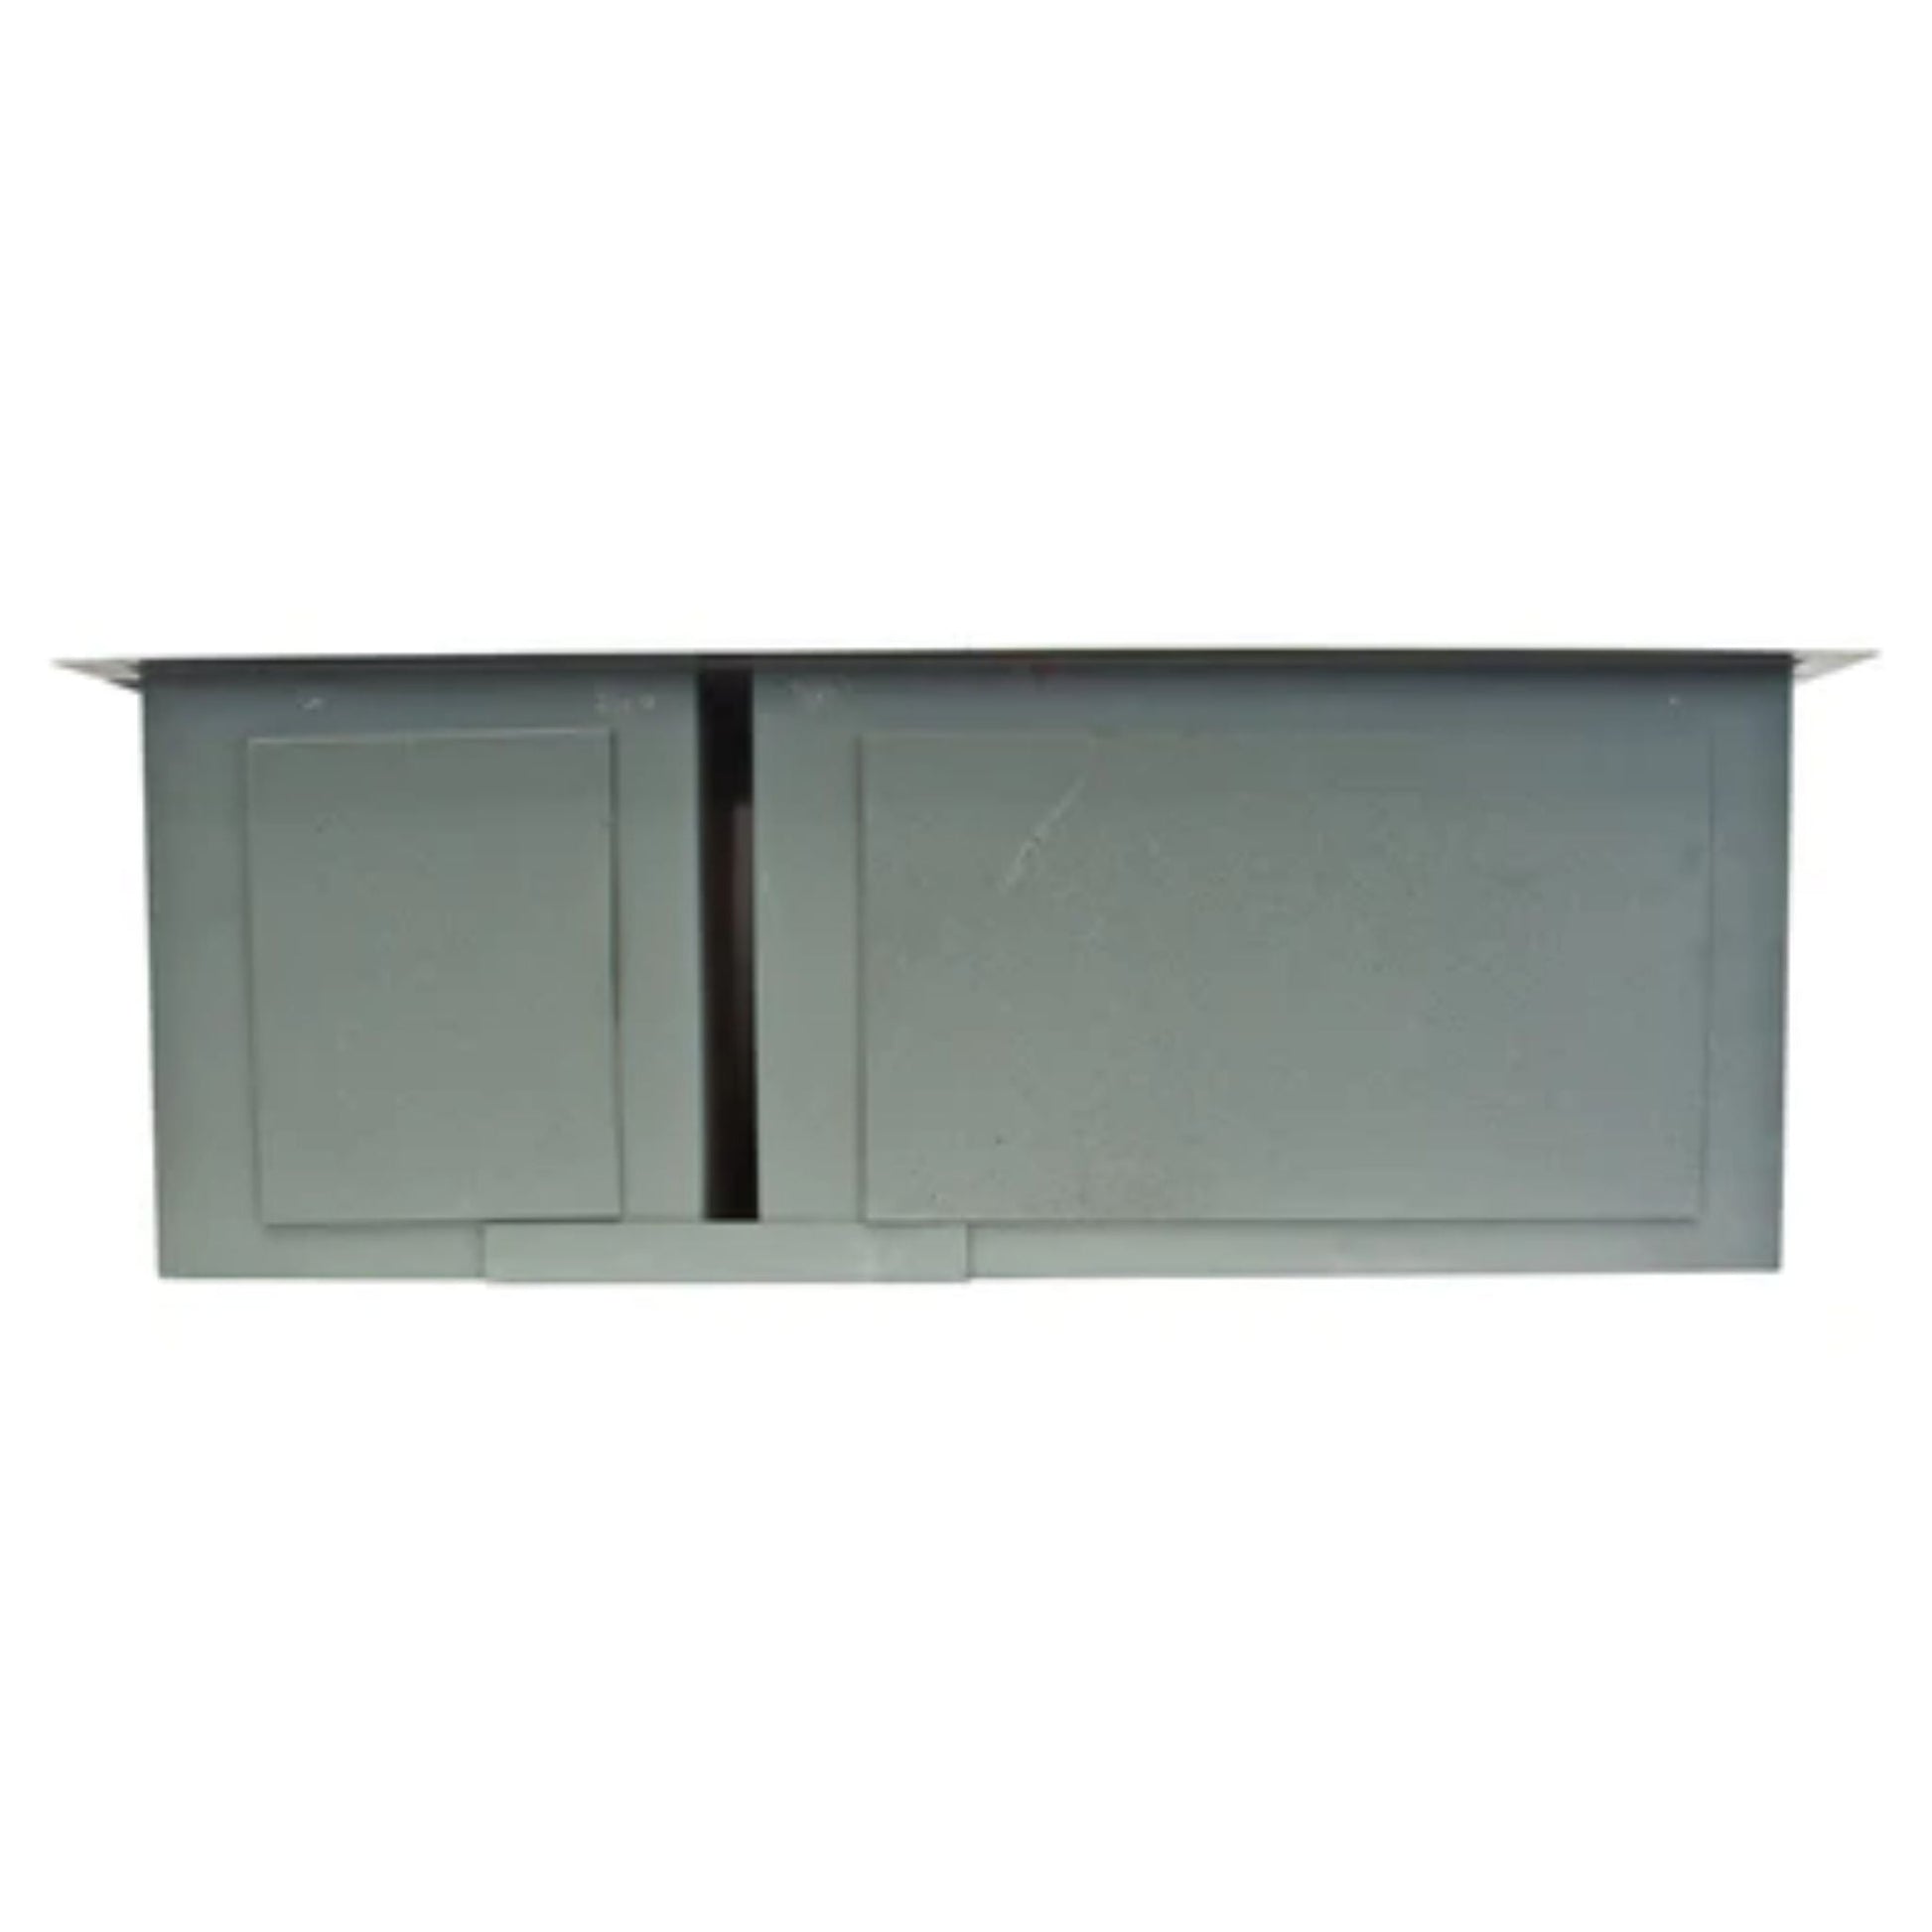 LessCare Zero-Radius Undermount Stainless Steel Double Basin Kitchen Sink - LP3L